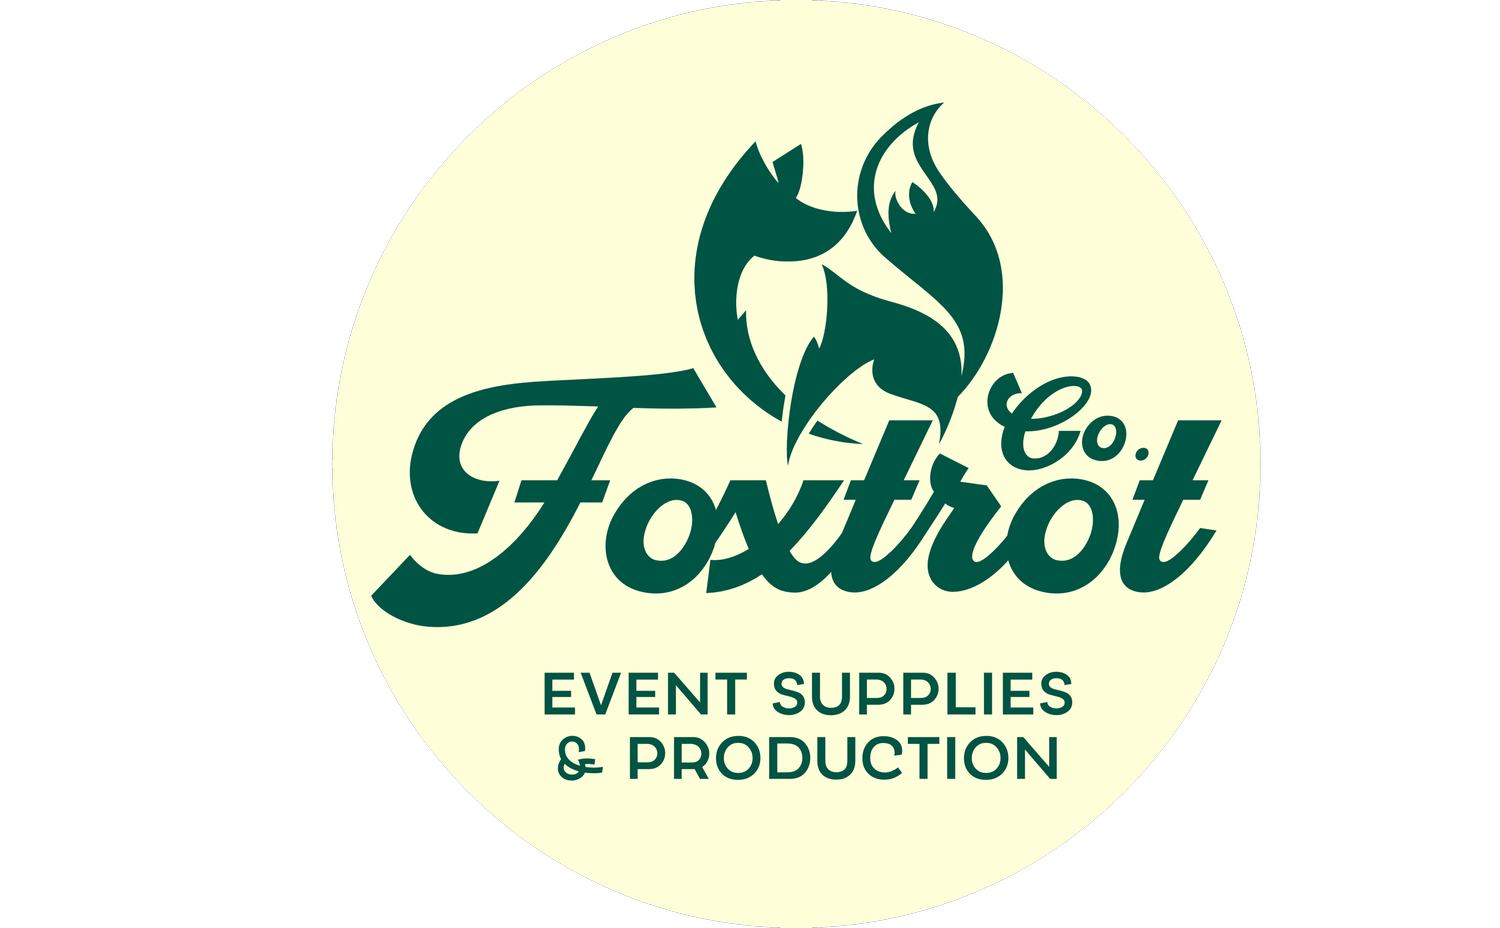 Foxtrot Co. Event Services